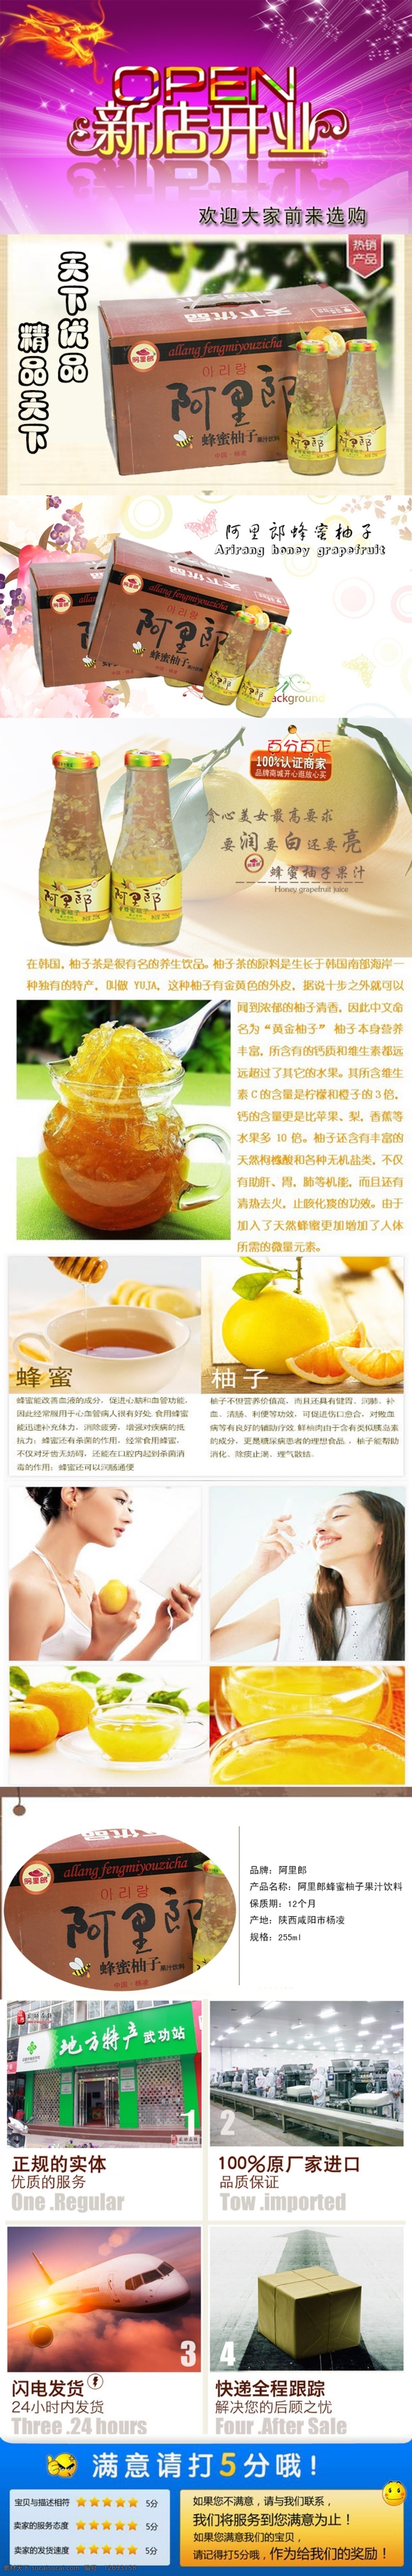 蜂蜜 柚子 商品 详情 页 蜂蜜柚子 详情页设计